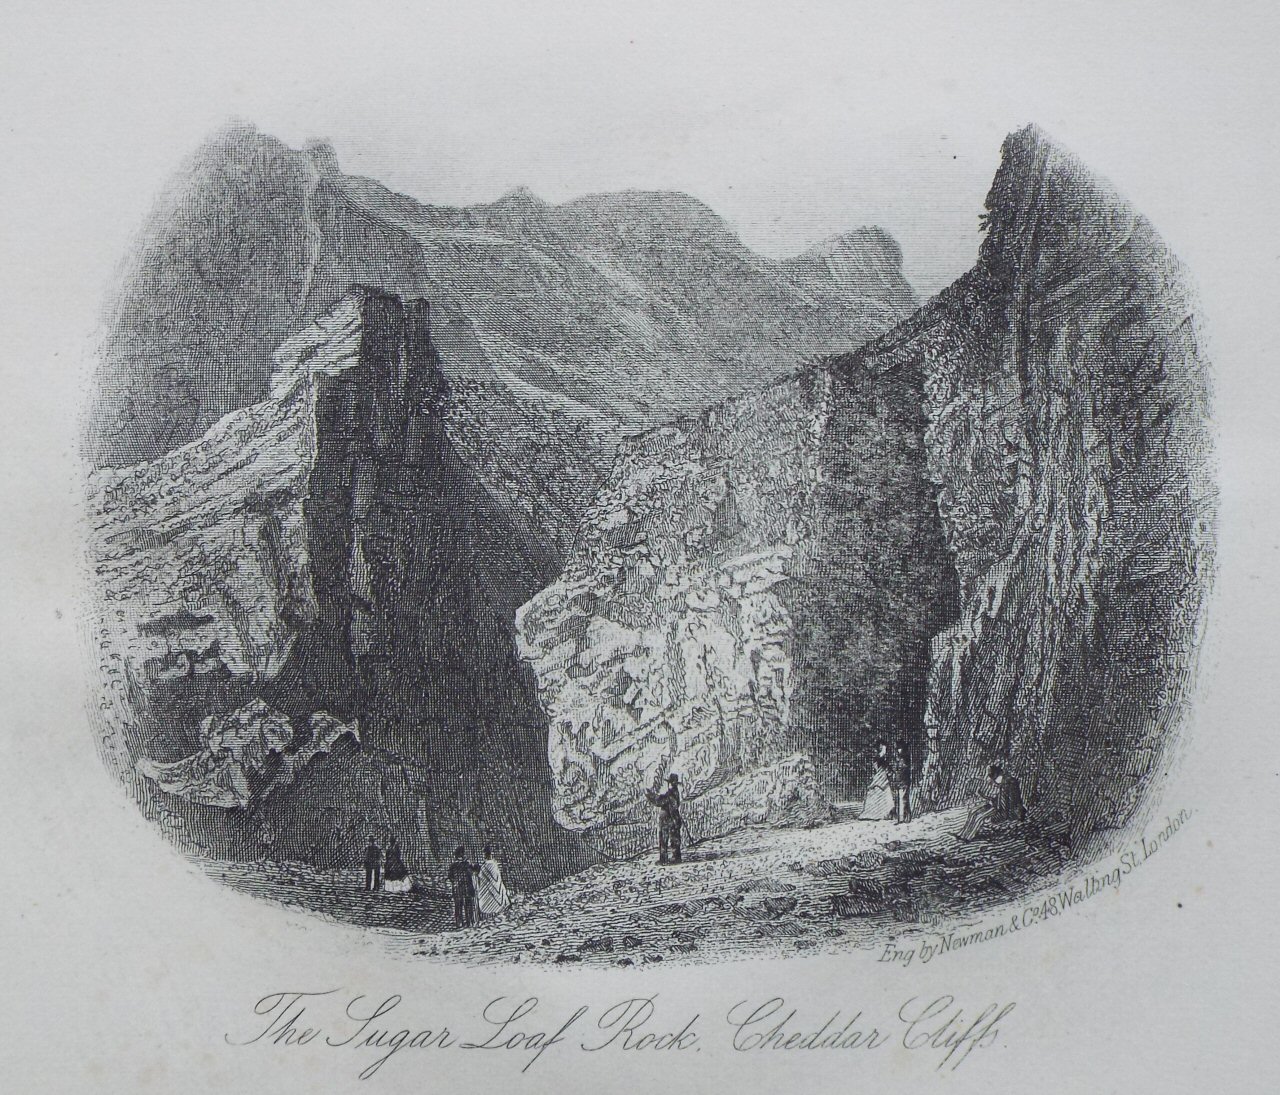 Steel Vignette - The Sugar Loaf Rock, Cheddar Cliffs - Newman